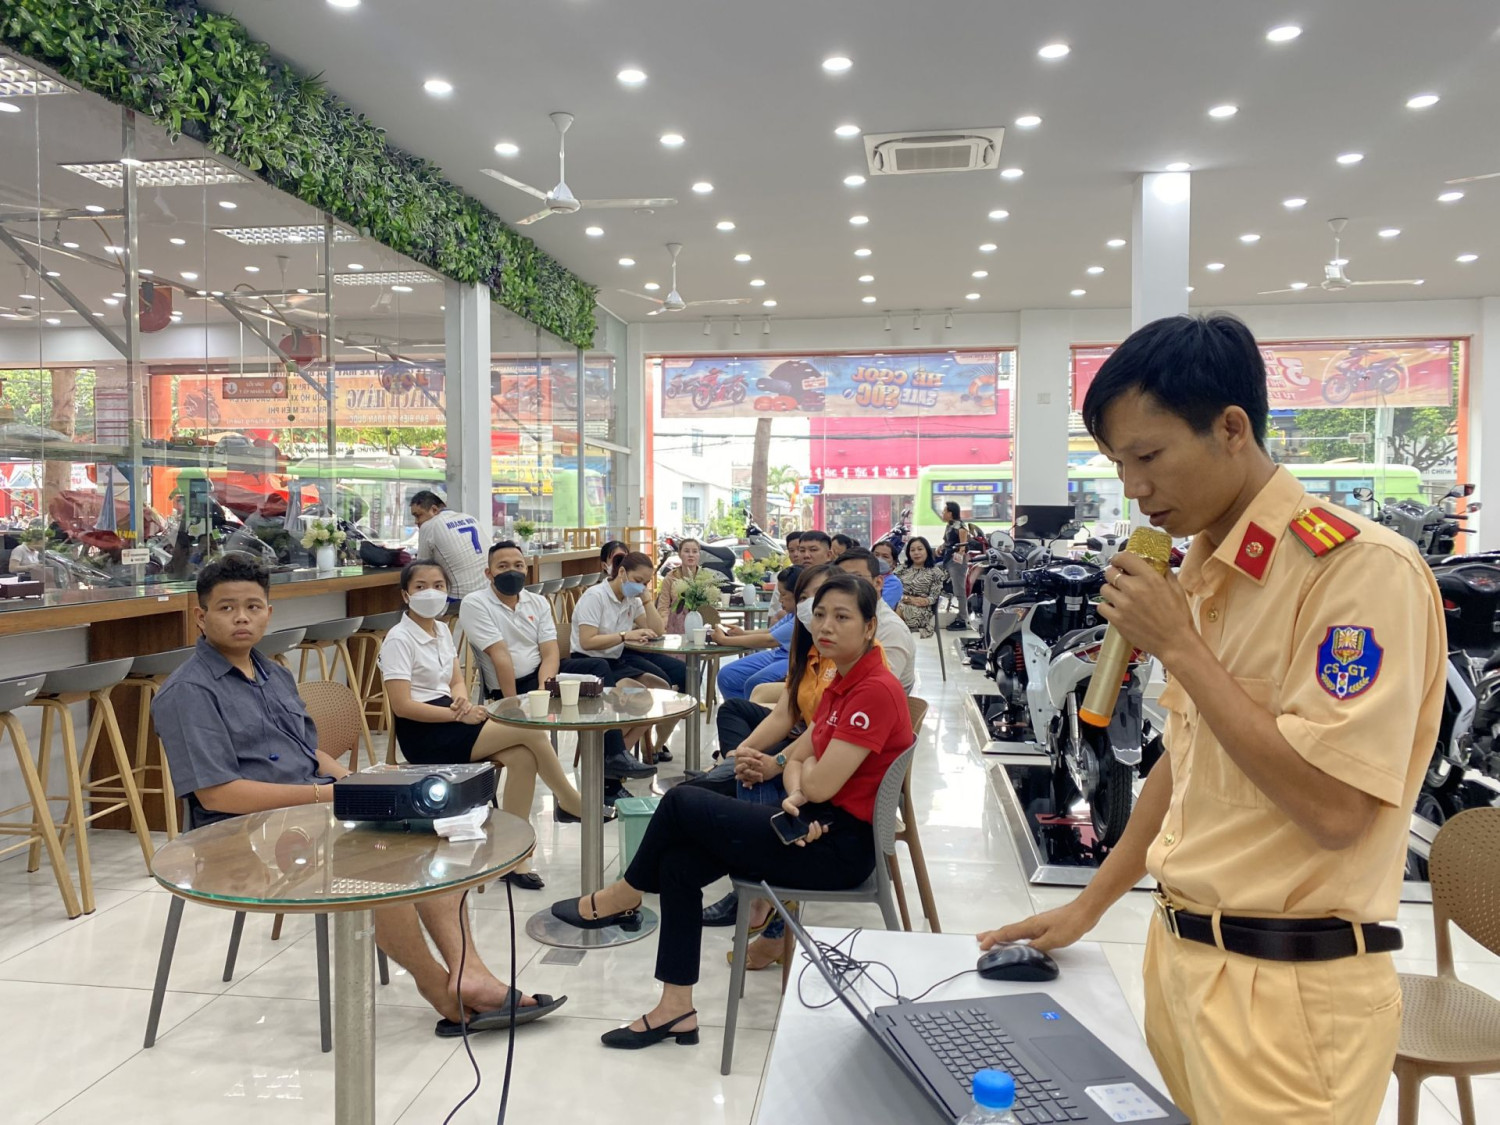 Liên đoàn Lao động thành phố Tây Ninh tổ chức tuyên truyền an toàn vệ sinh lao động và pháp luật về trật tự, an toàn giao thông cho cán bộ, công nhân, người lao động Công ty TNHH Hòa Bình Minh Tây Ninh (Phường IV).